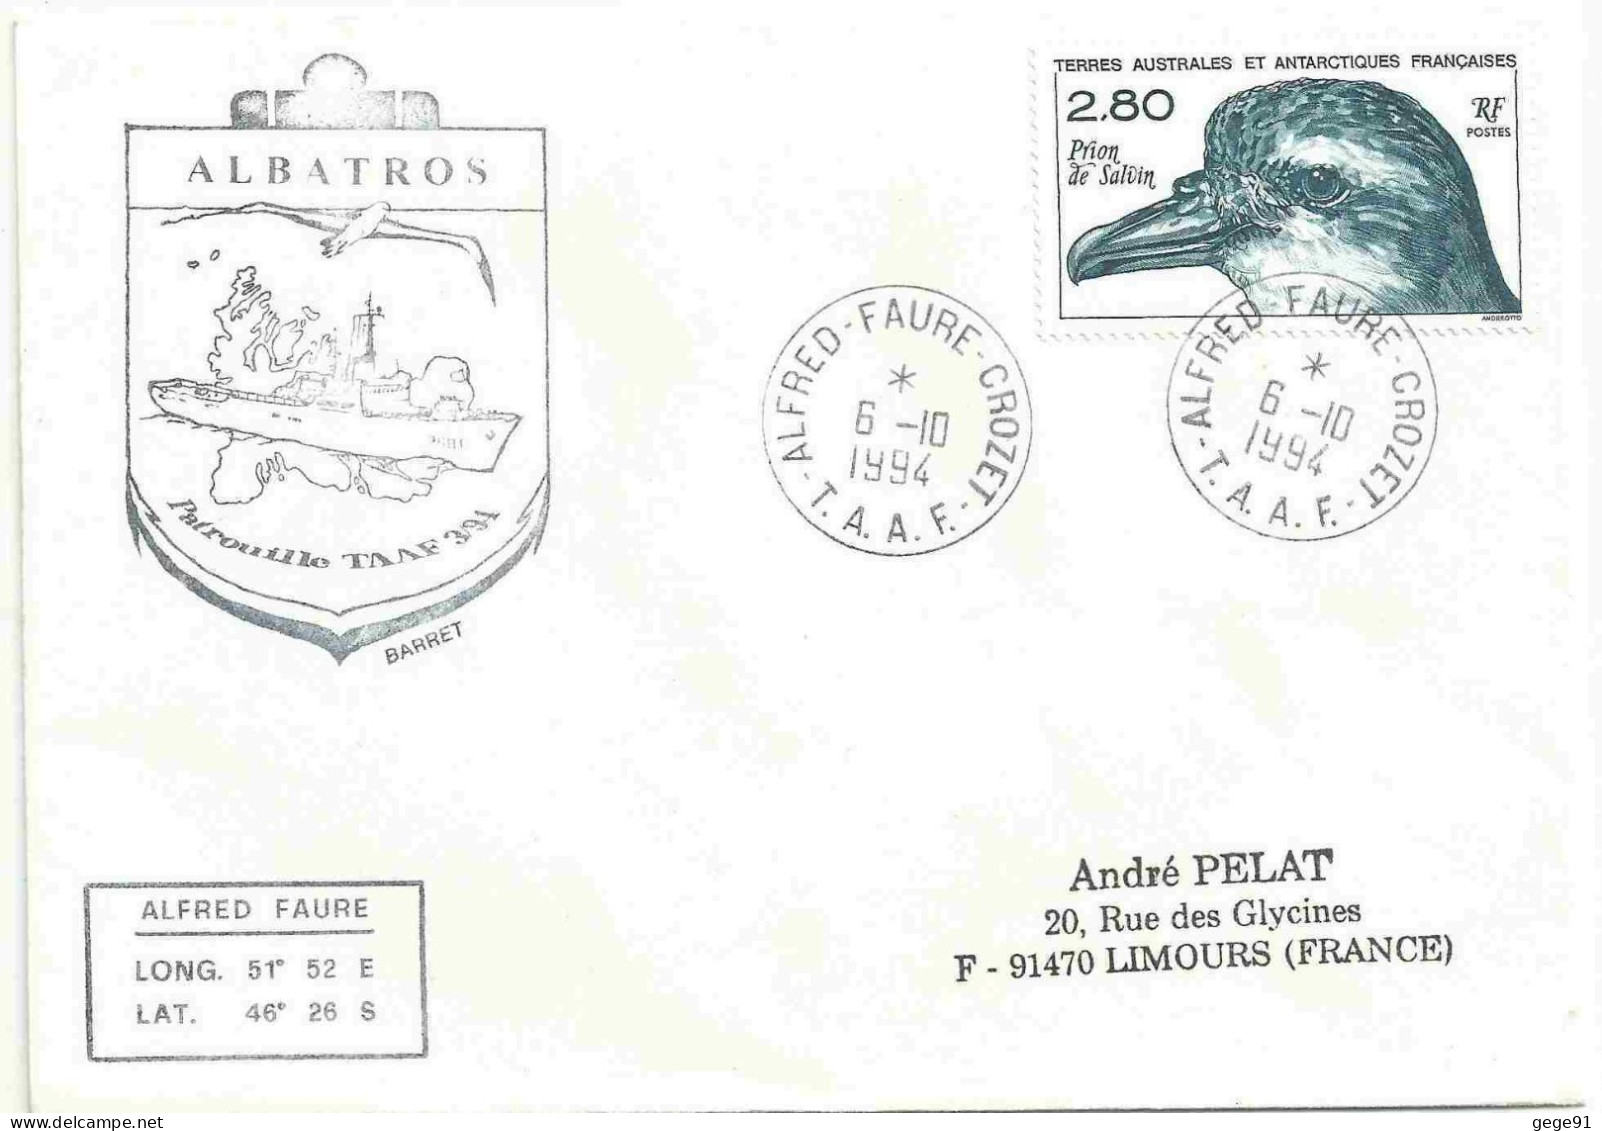 YT 189 Prion De Salvin - Posté à Bord De L'Albatros - Alfred Faure - Crozet - 06/10/1994 - Cartas & Documentos